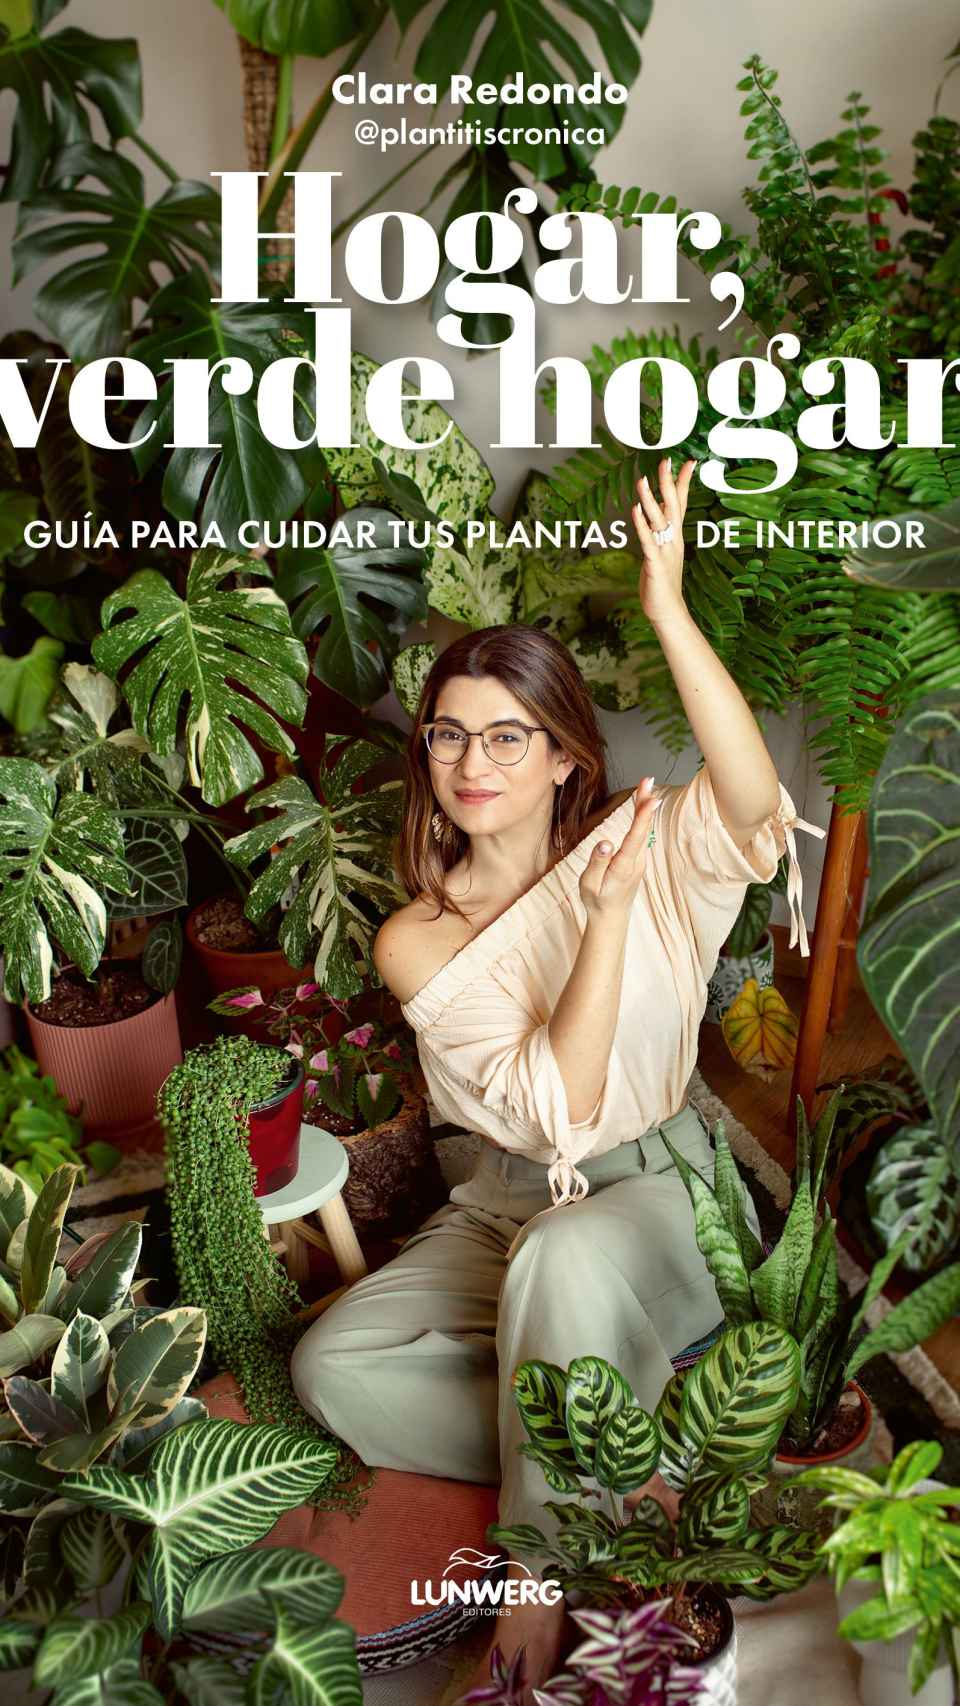 Clara Redondo y su libro 'Hogar, verde hogar'